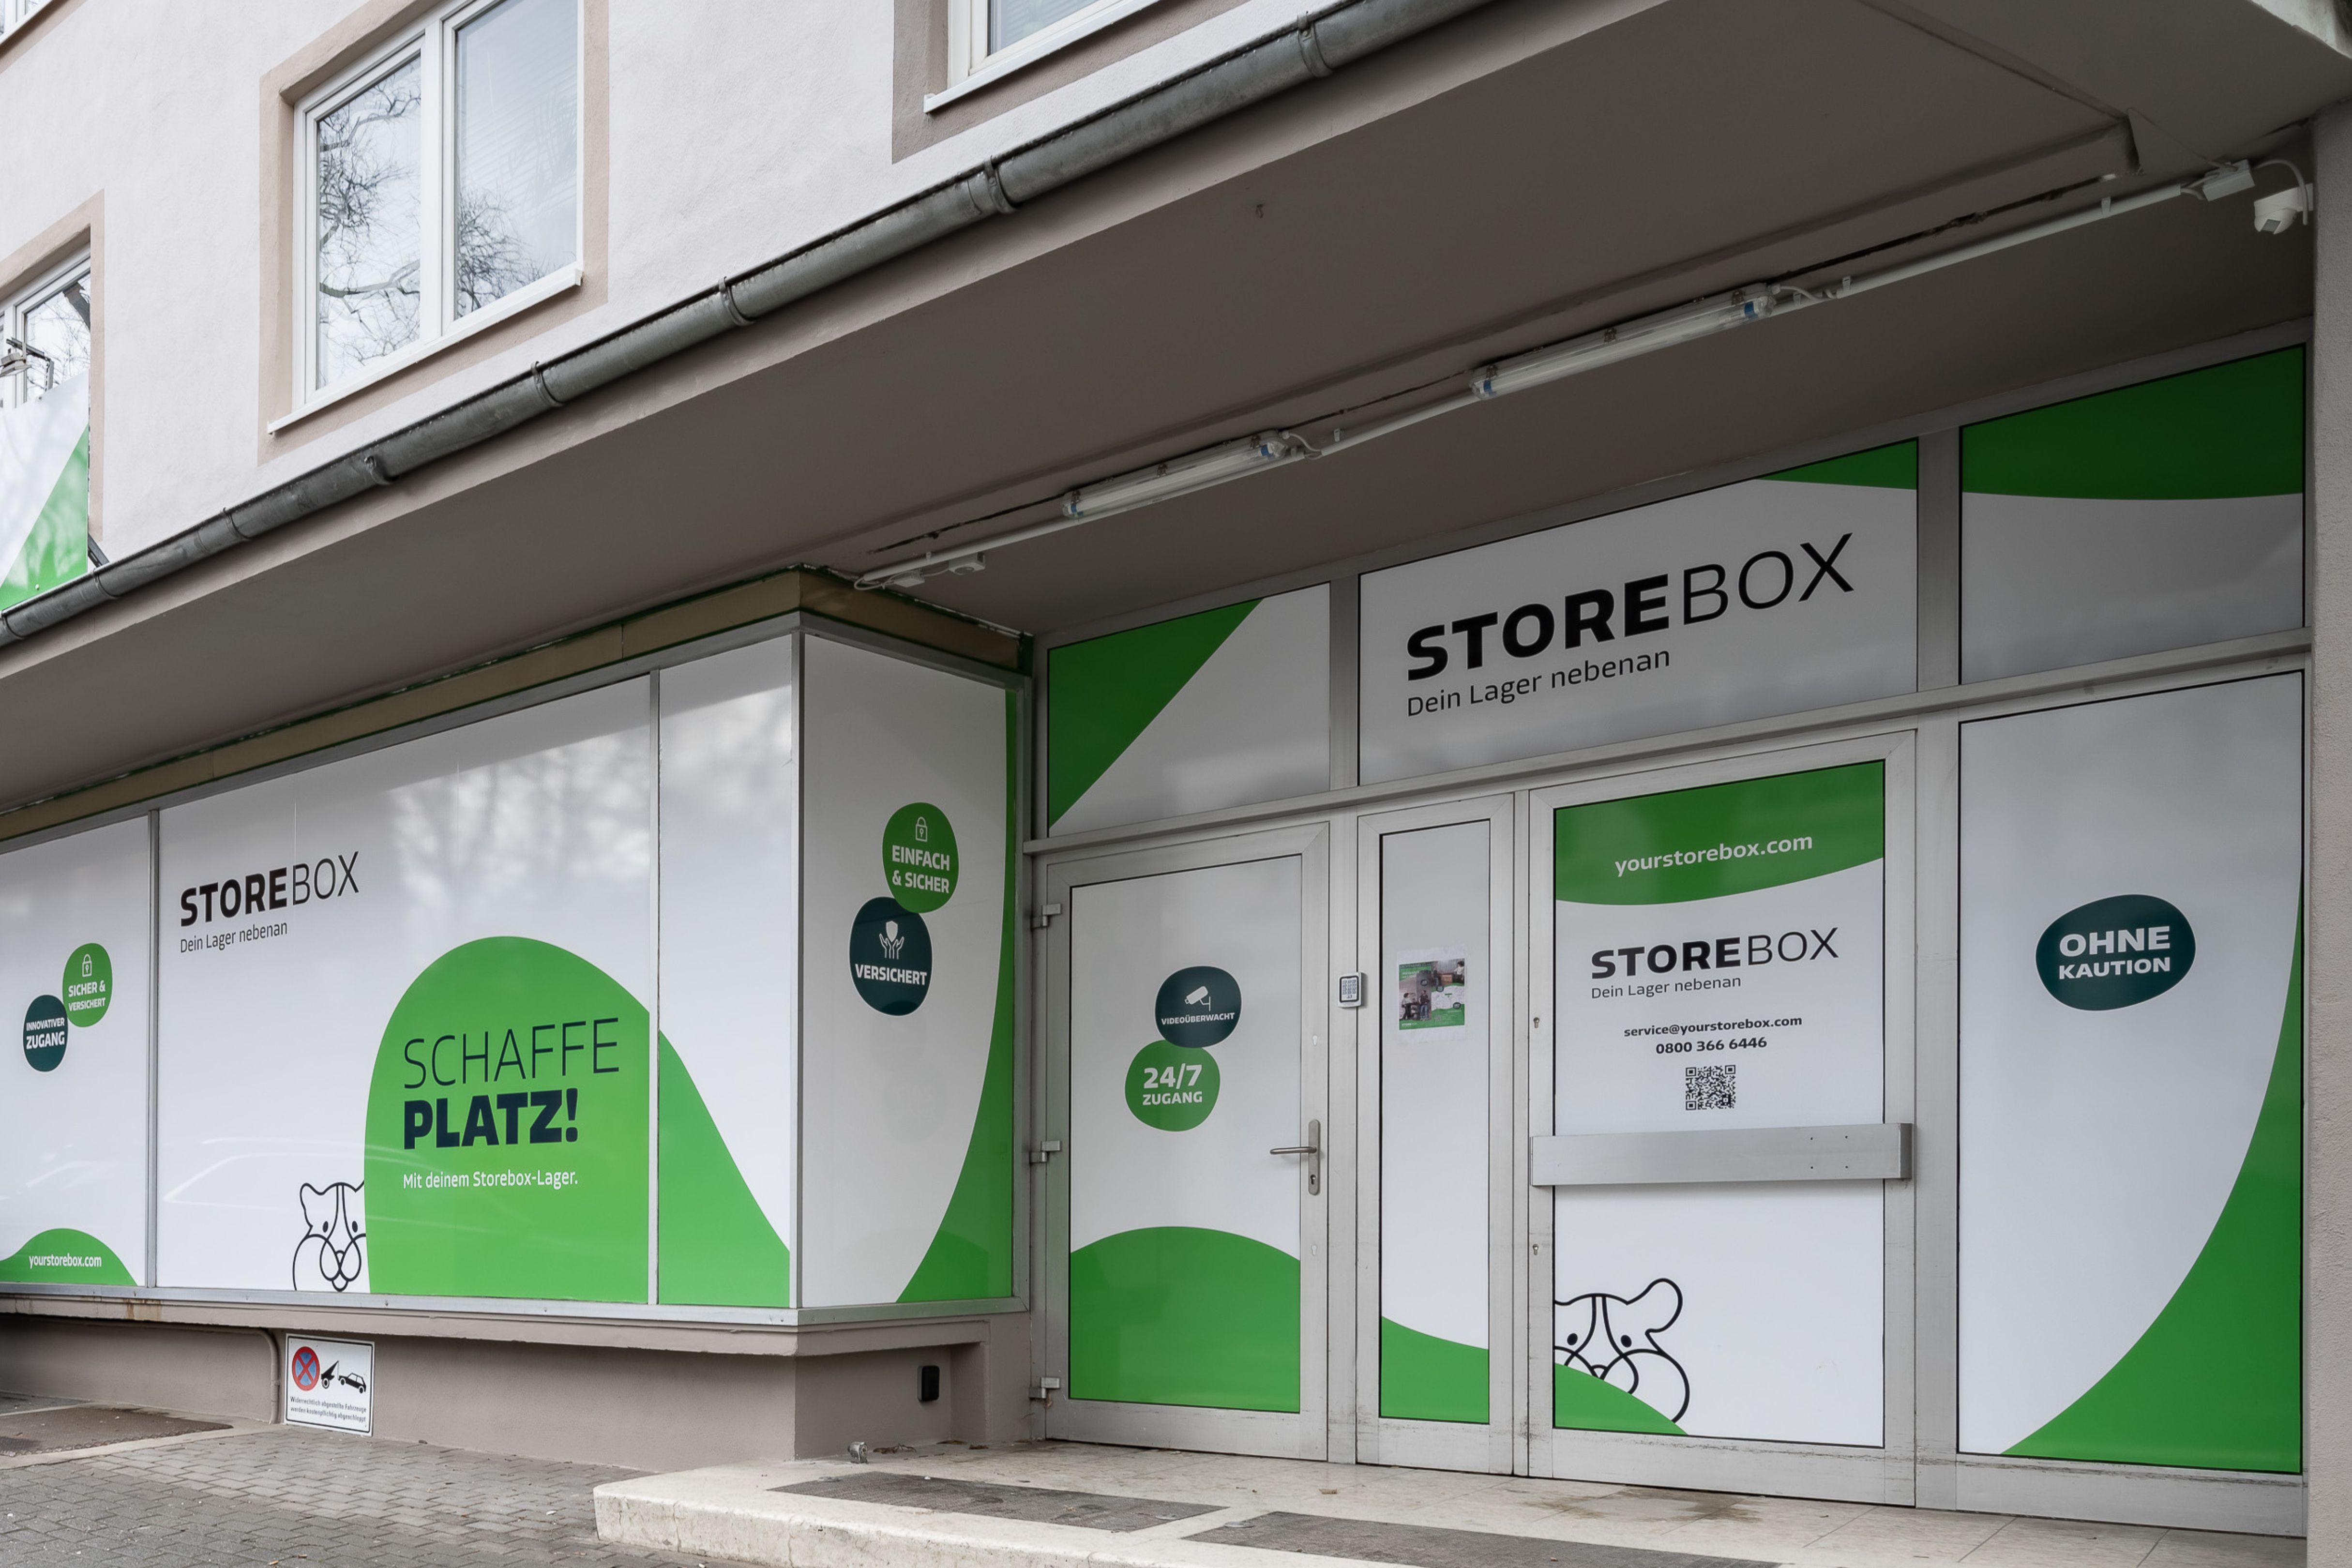 Bild 4 Storebox - Dein Lager nebenan in Wiesbaden